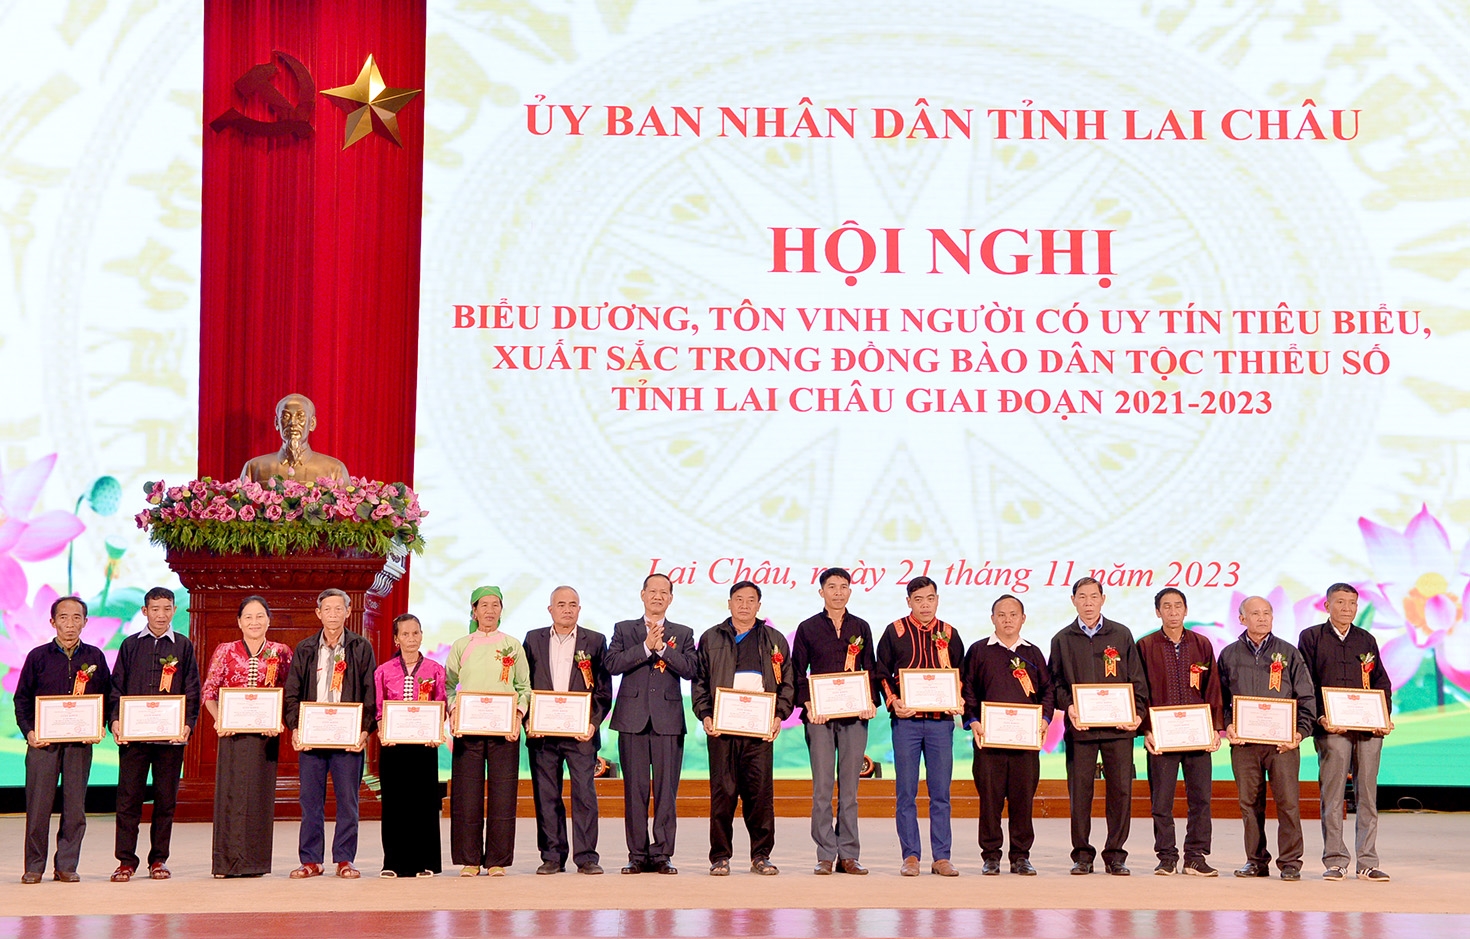 Đồng chí Trần Hữu Chí, Trưởng Ban Dân tộc tỉnh tặng Giấy khen cho Người có uy tín tiêu biểu, có thành tích xuất sắc đóng góp trong phát triển kinh tế - xã hội, bảo vệ an ninh trật tự ở cơ sở giai đoạn 2021-2023.